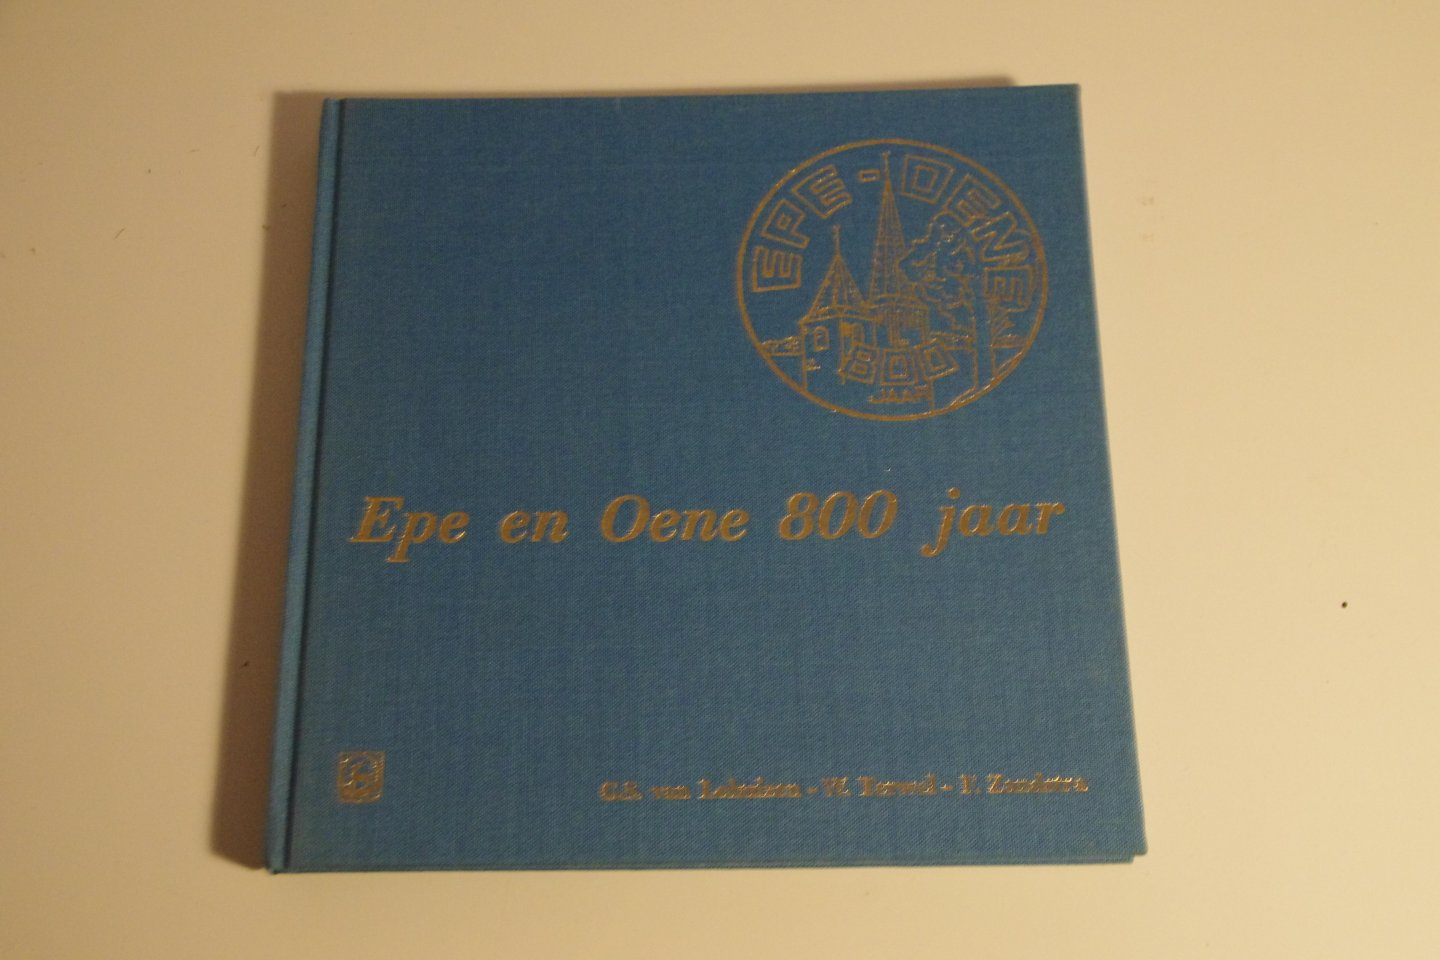 G.S. van Lohuizen ea - Epe en Oene 800 jaar